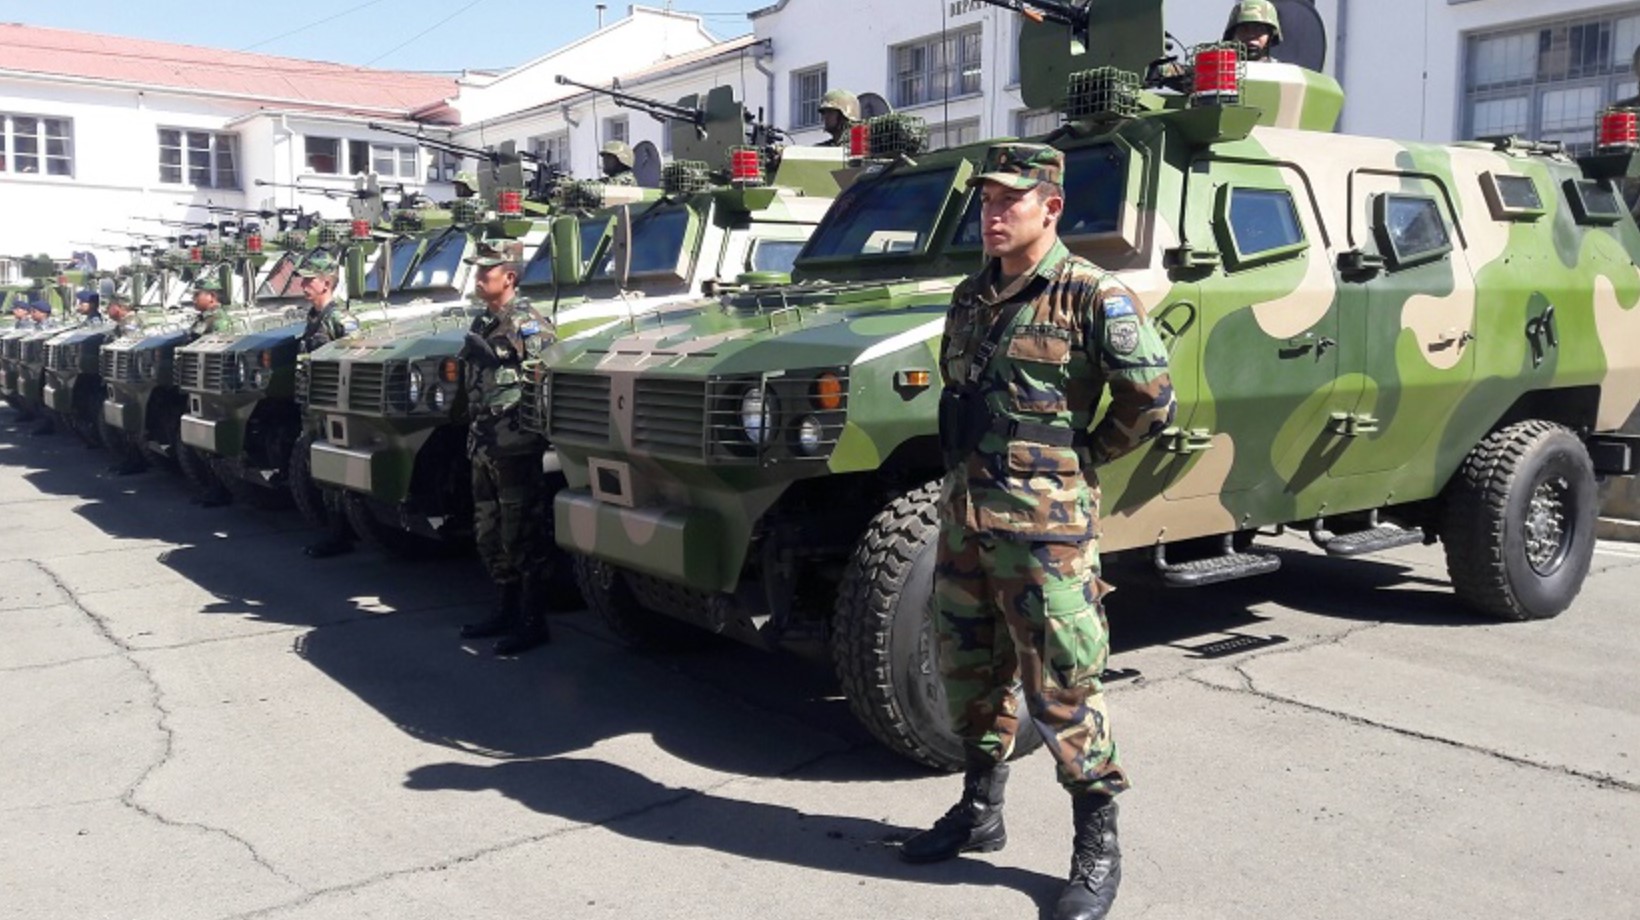 Китайські бронемашини Tiger на озброєнні сил Болівії. 2016 рік. Болівія. Фото: Agencia Boliviana de Información